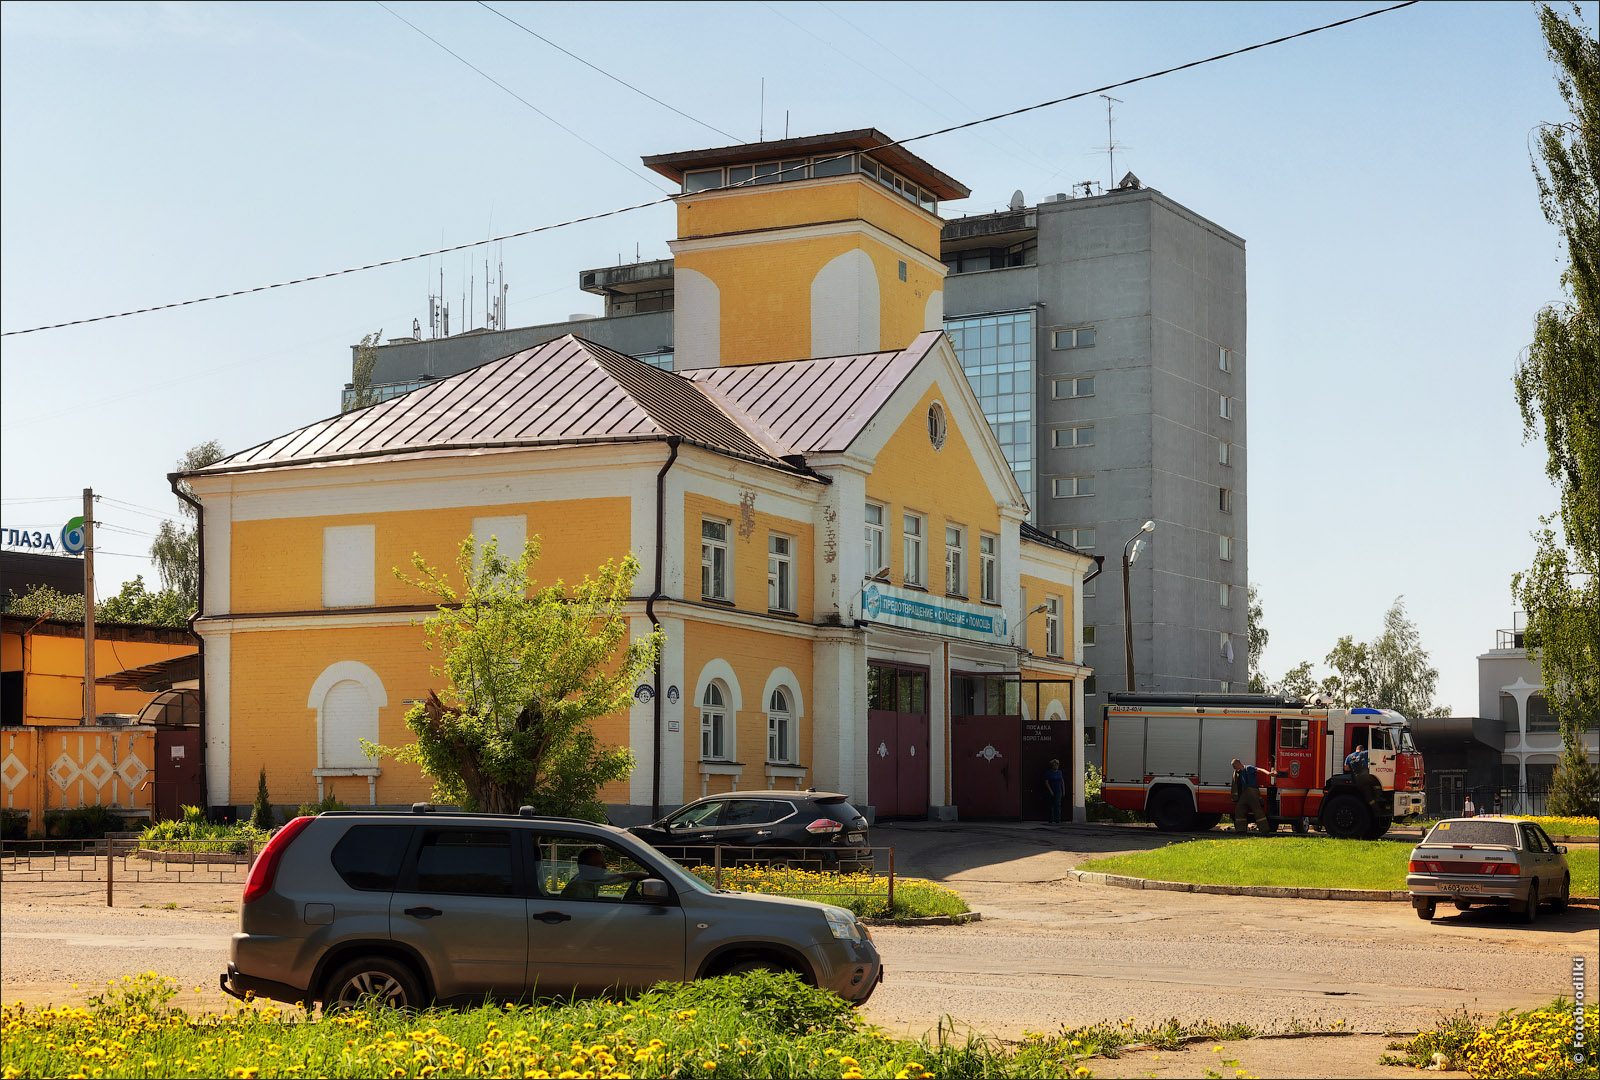 Пожарная часть №4, Кострома, Россия